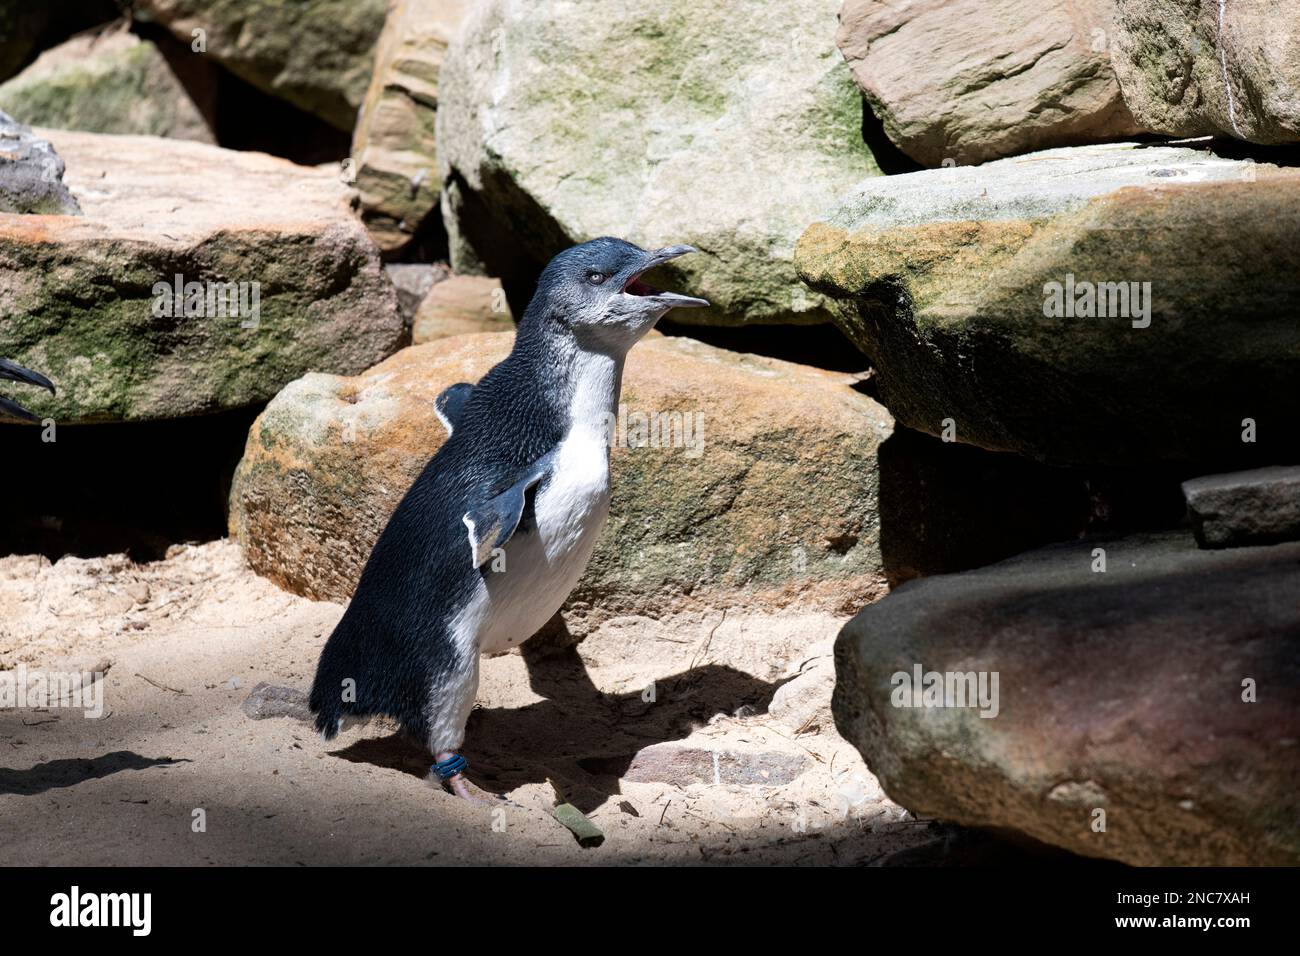 Little Blue Penguin (Eudyptula minor) dans un parc animalier de Sydney, Nouvelle-Galles du Sud, Australie (photo de Tara Chand Malhotra) Banque D'Images